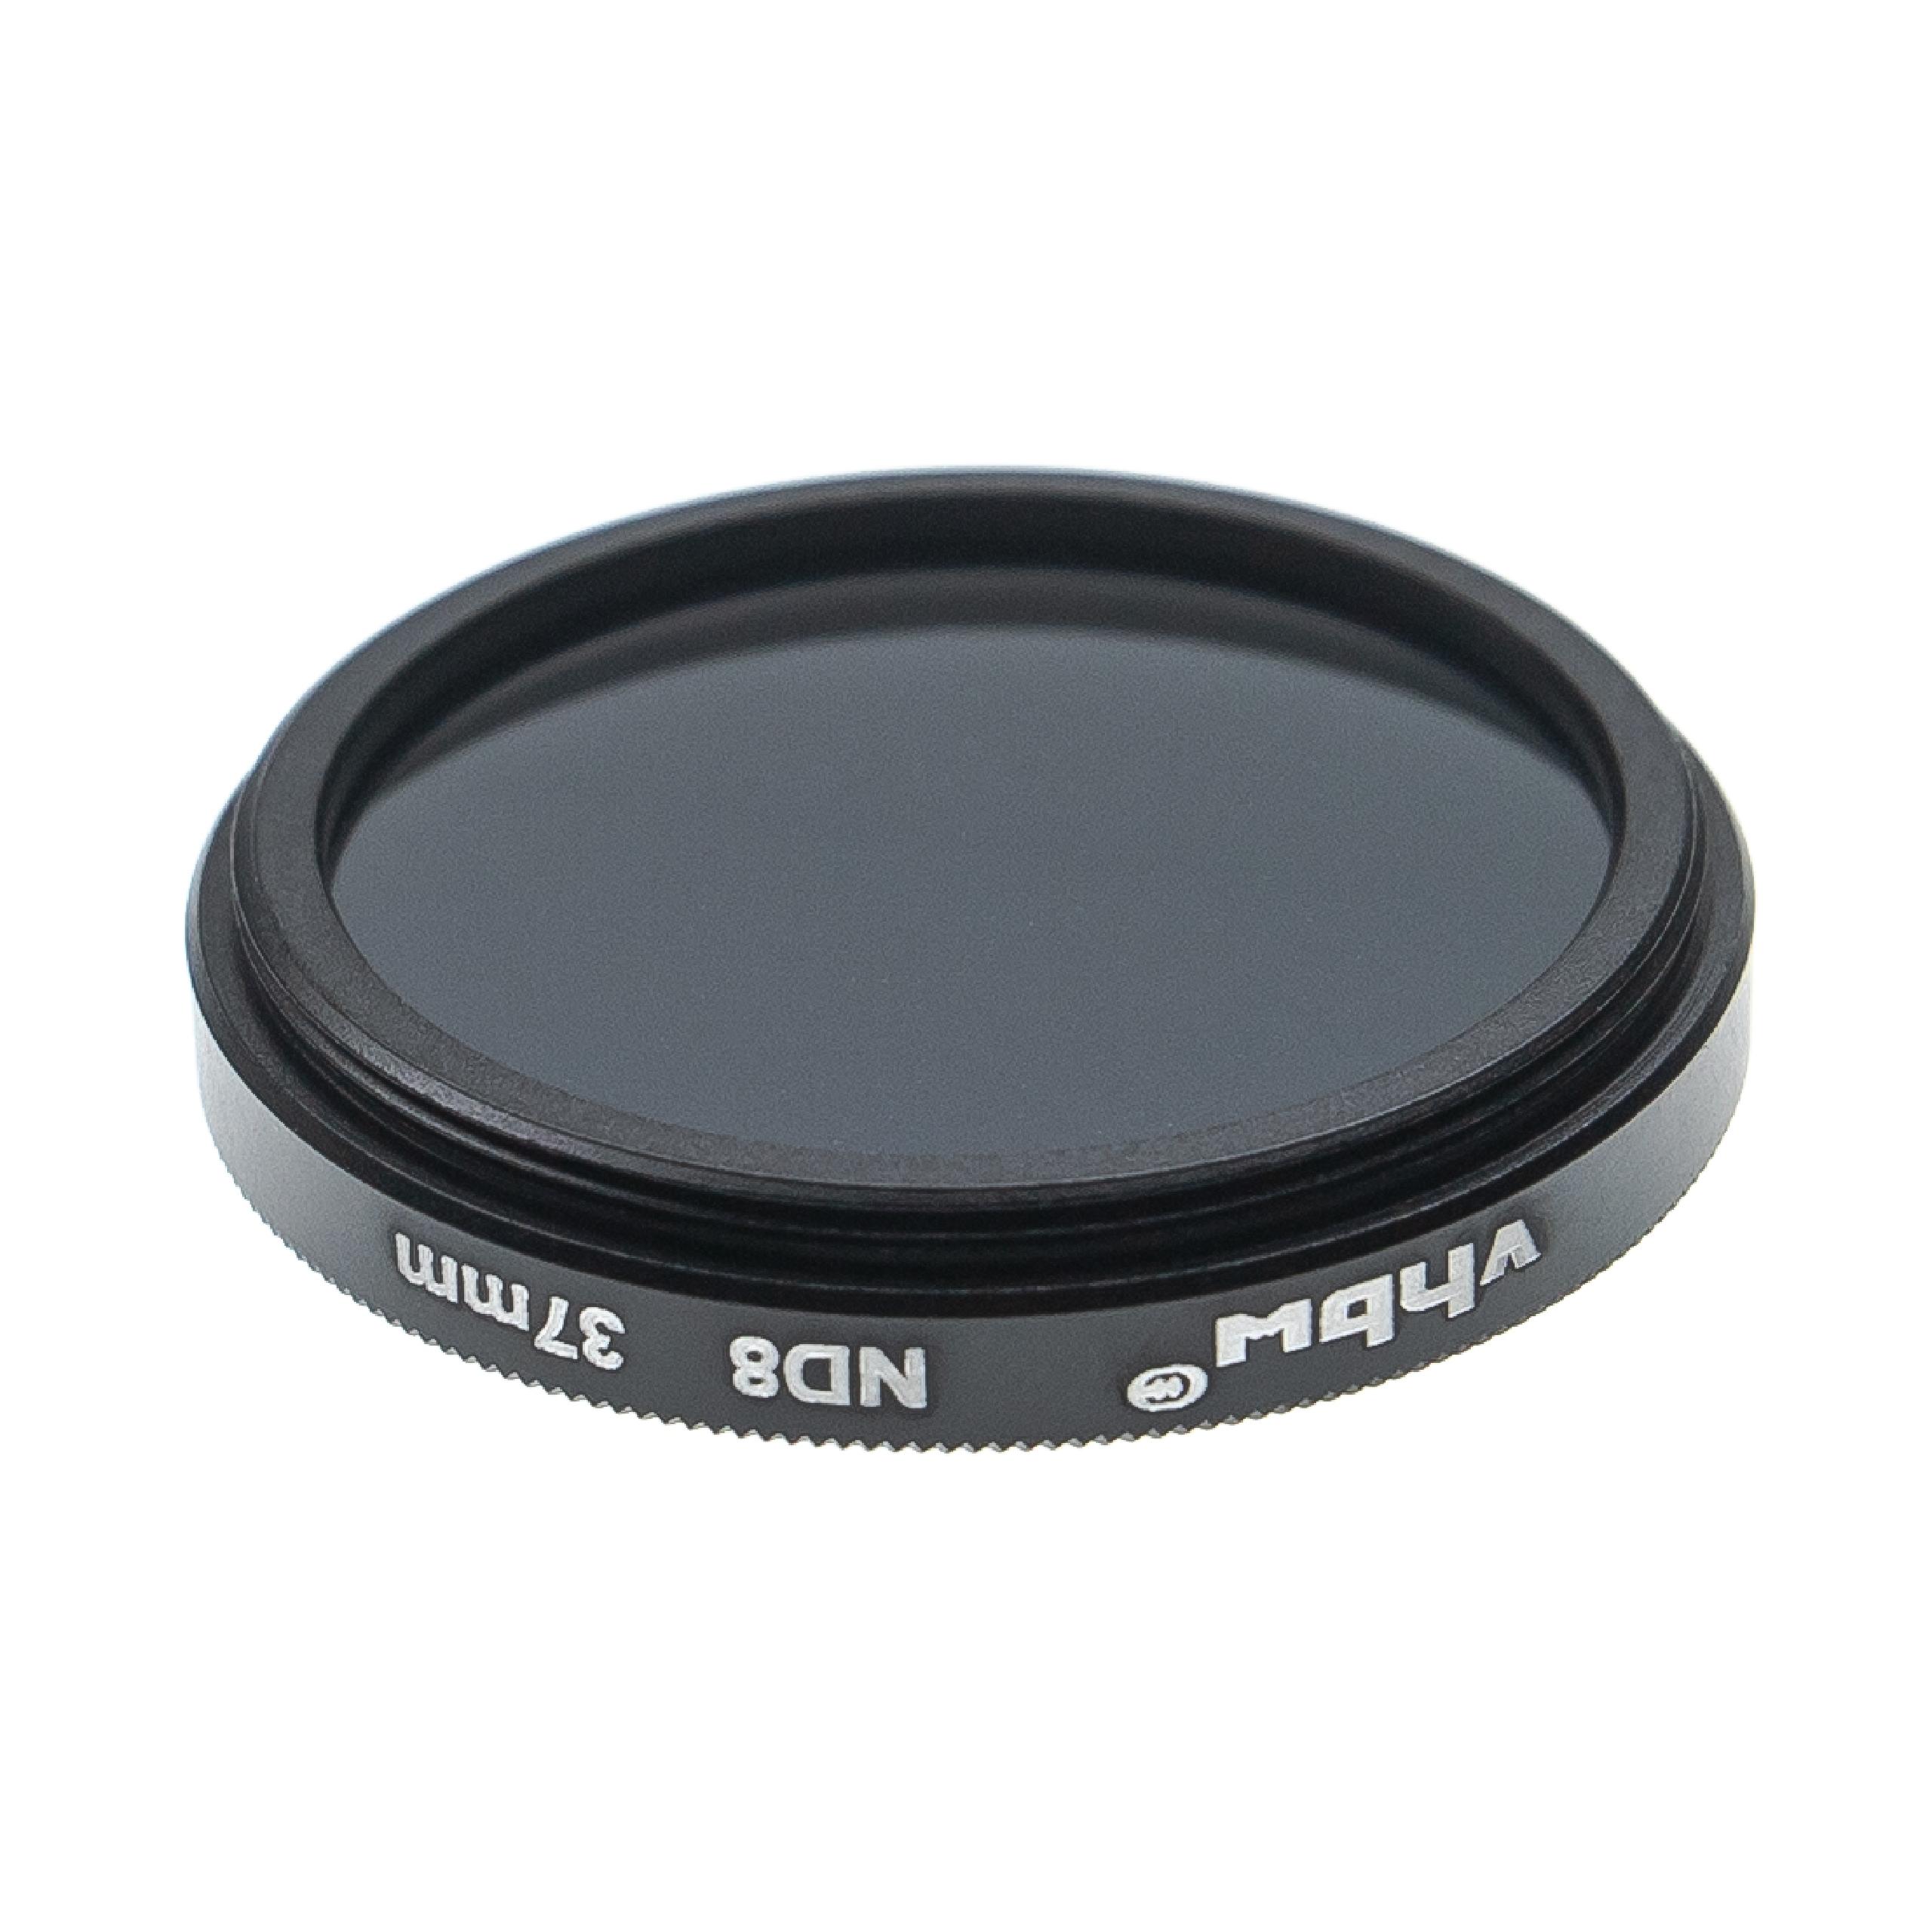 Filtre ND 8 universel pour objectif d'appareil photo de 37 mm de diamètre – Filtre gris